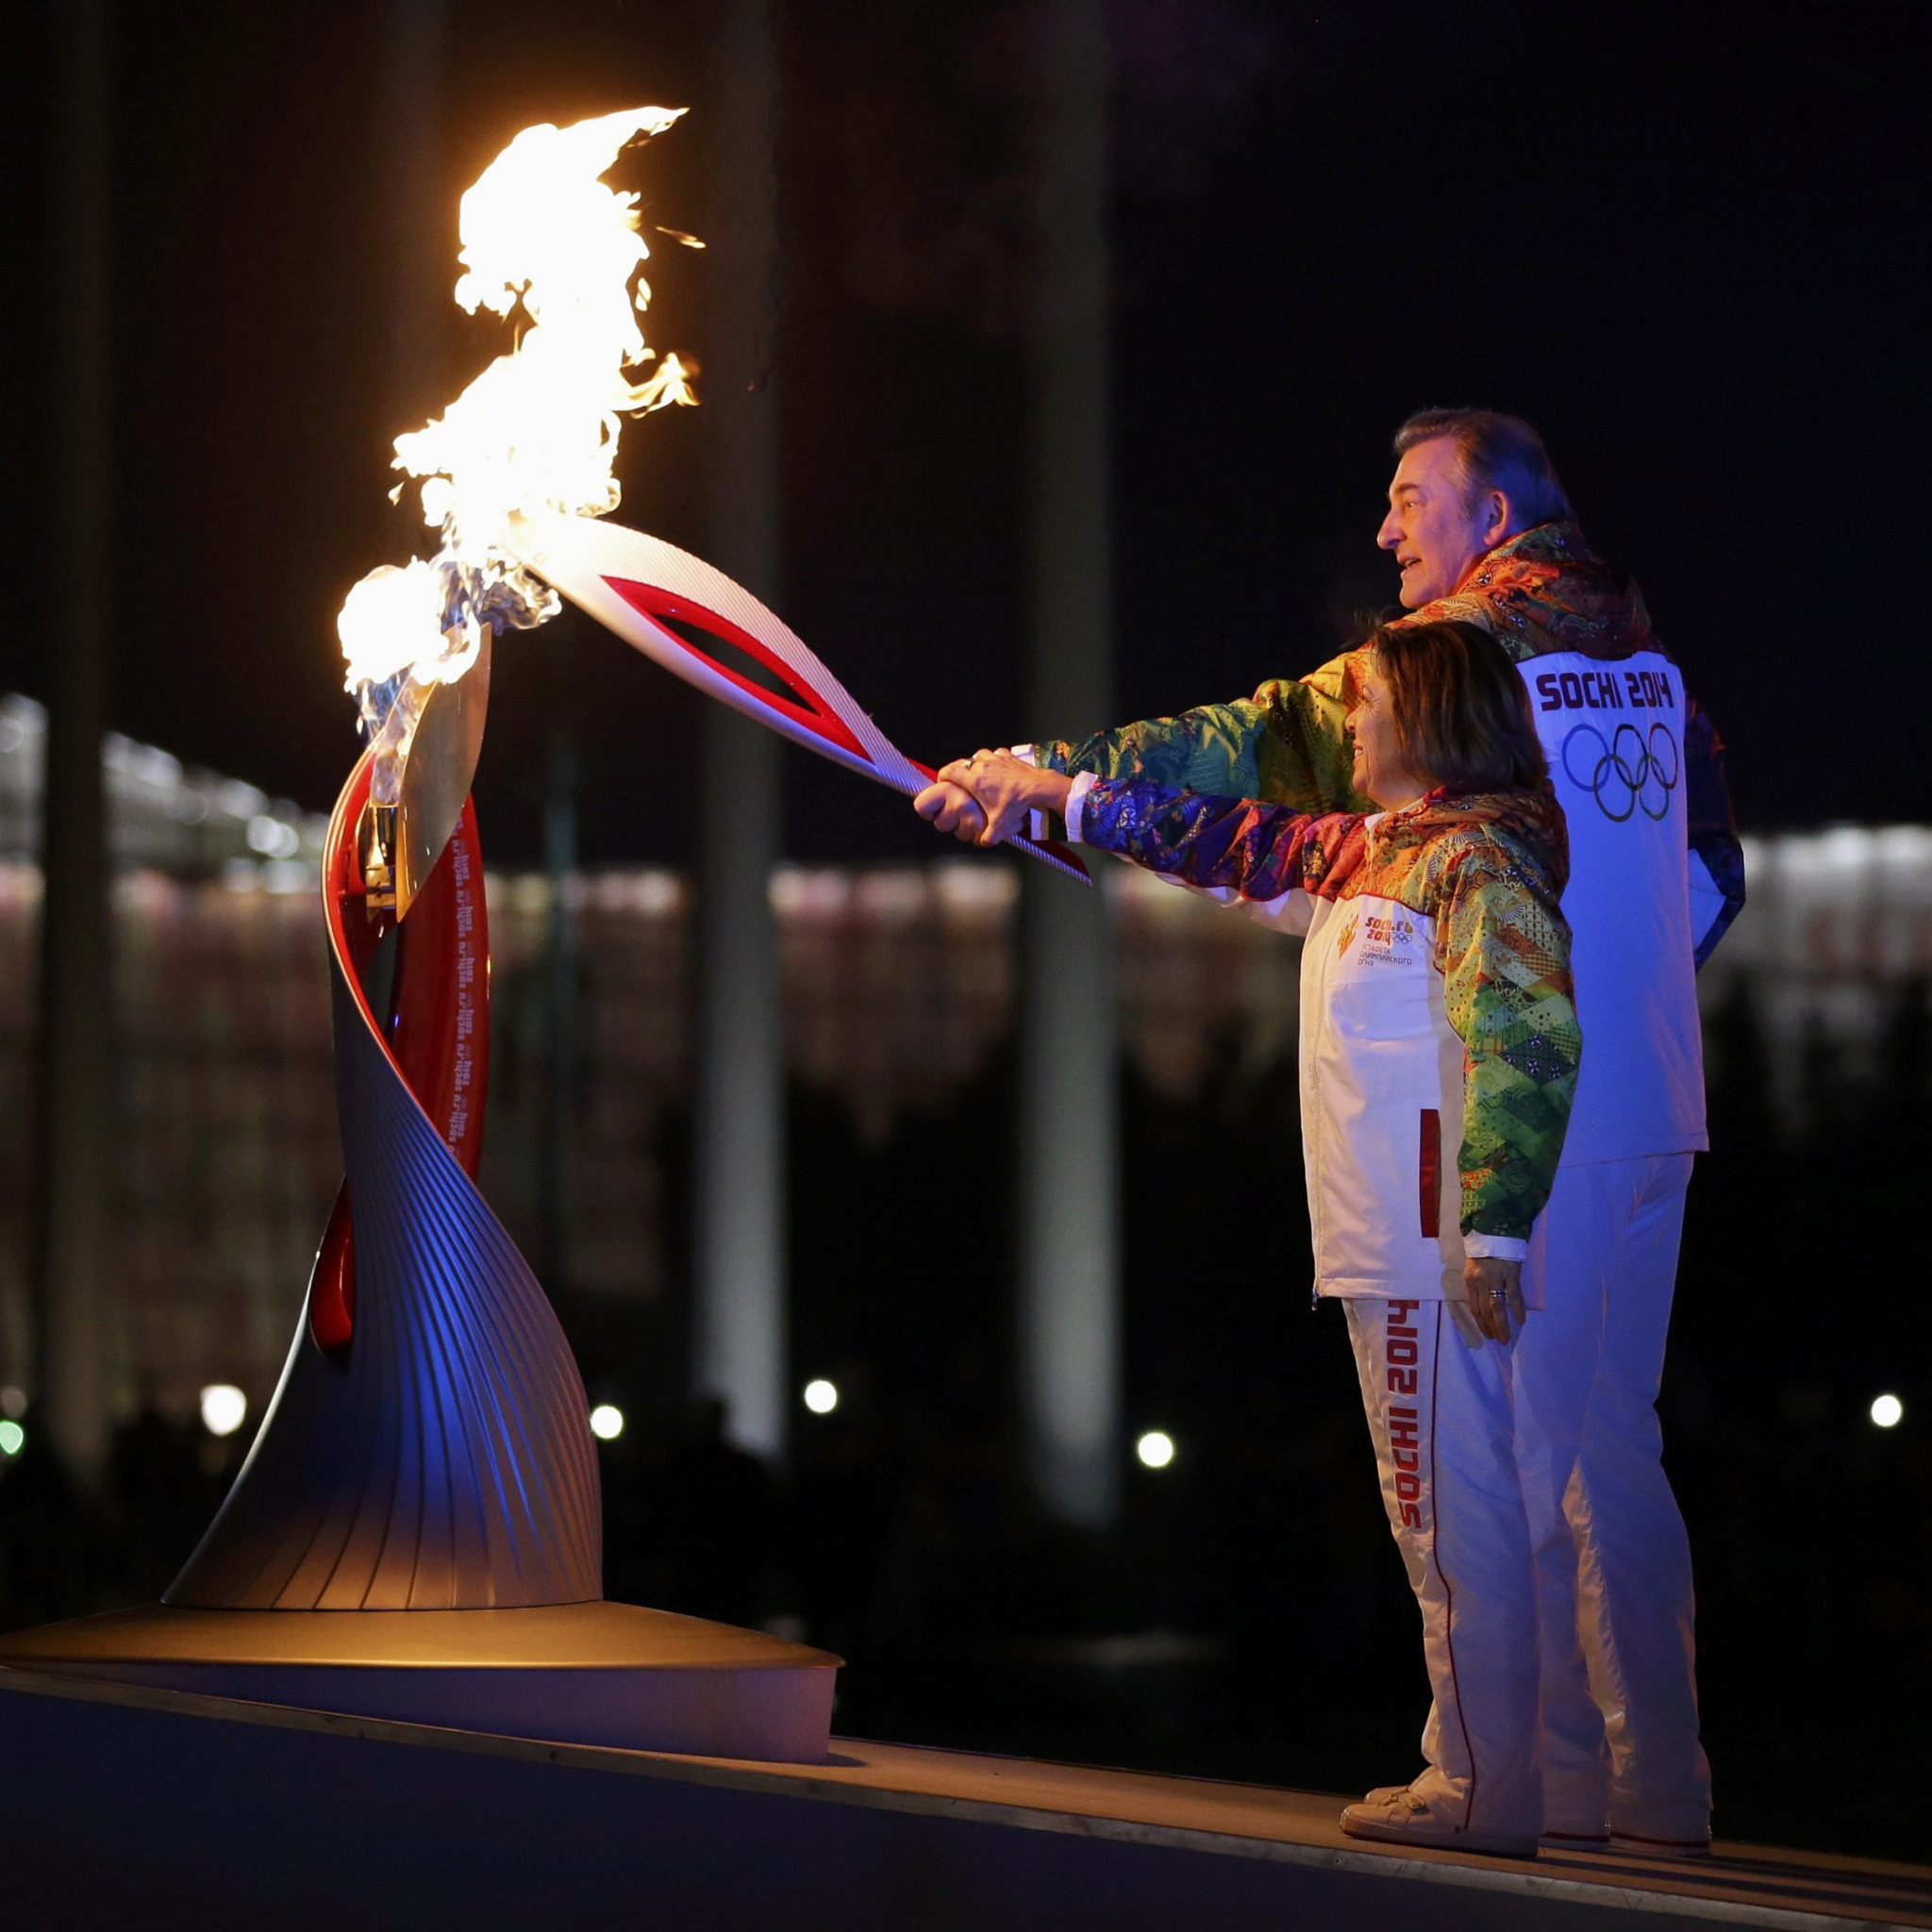 Олимпийский огонь Сочи 2014. Факел олимпийского огня Сочи 2014. Открытие Олимпийских игр в Сочи 2014. Факел начал игру